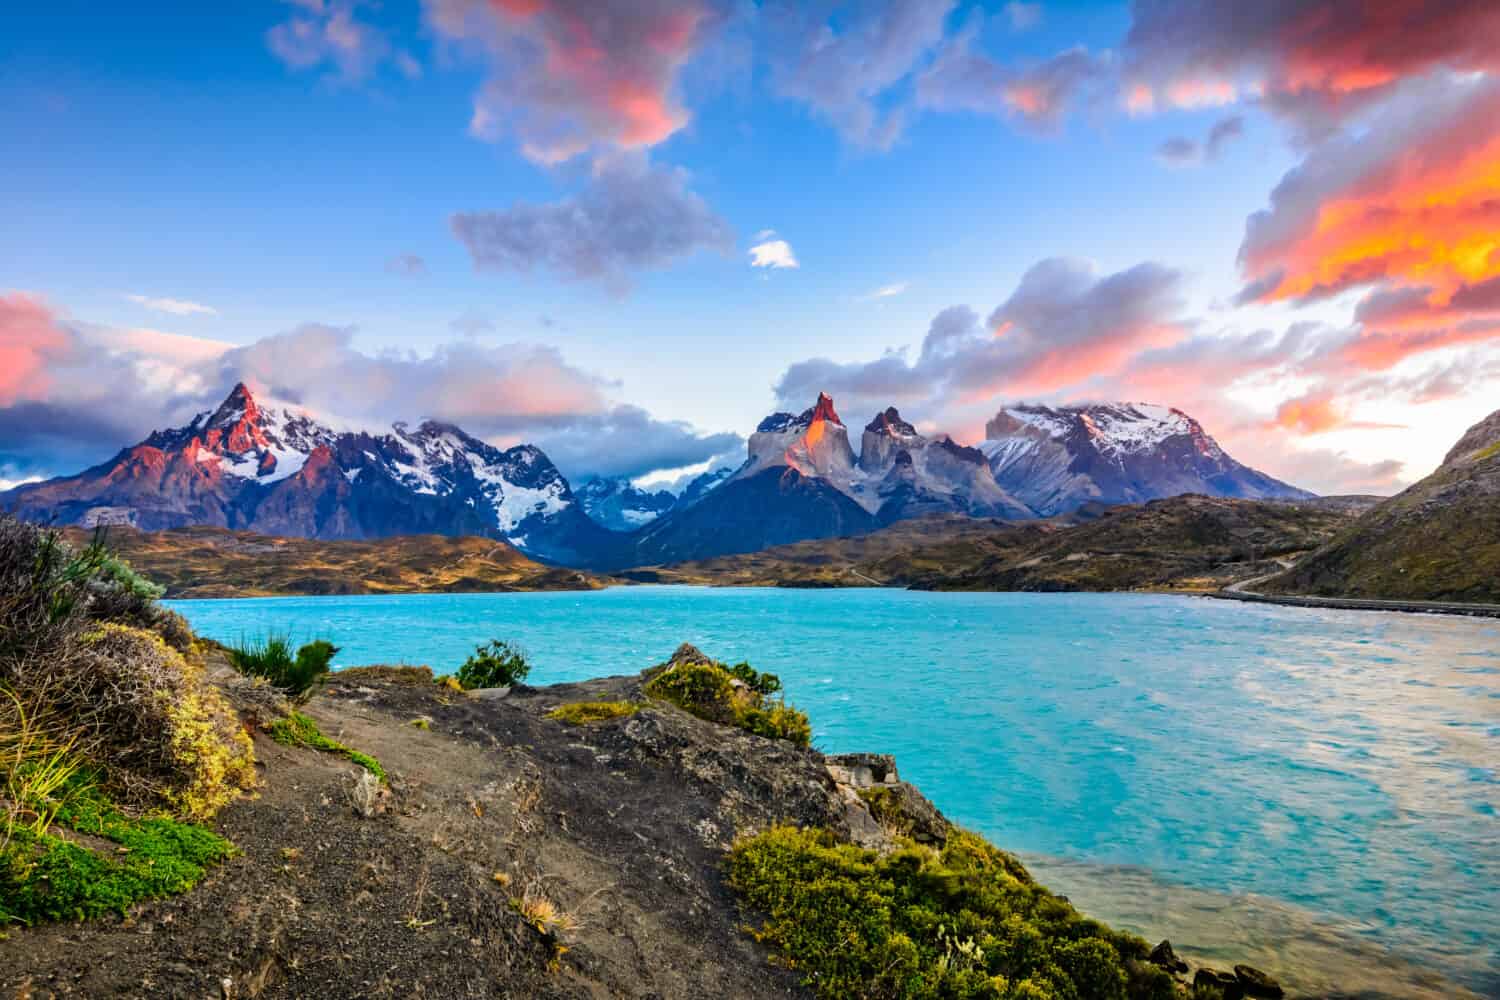 Torres del Paine sopra il lago Pehoe, Patagonia, Cile - campo di ghiaccio della Patagonia meridionale, regione di Magellano del Sud America